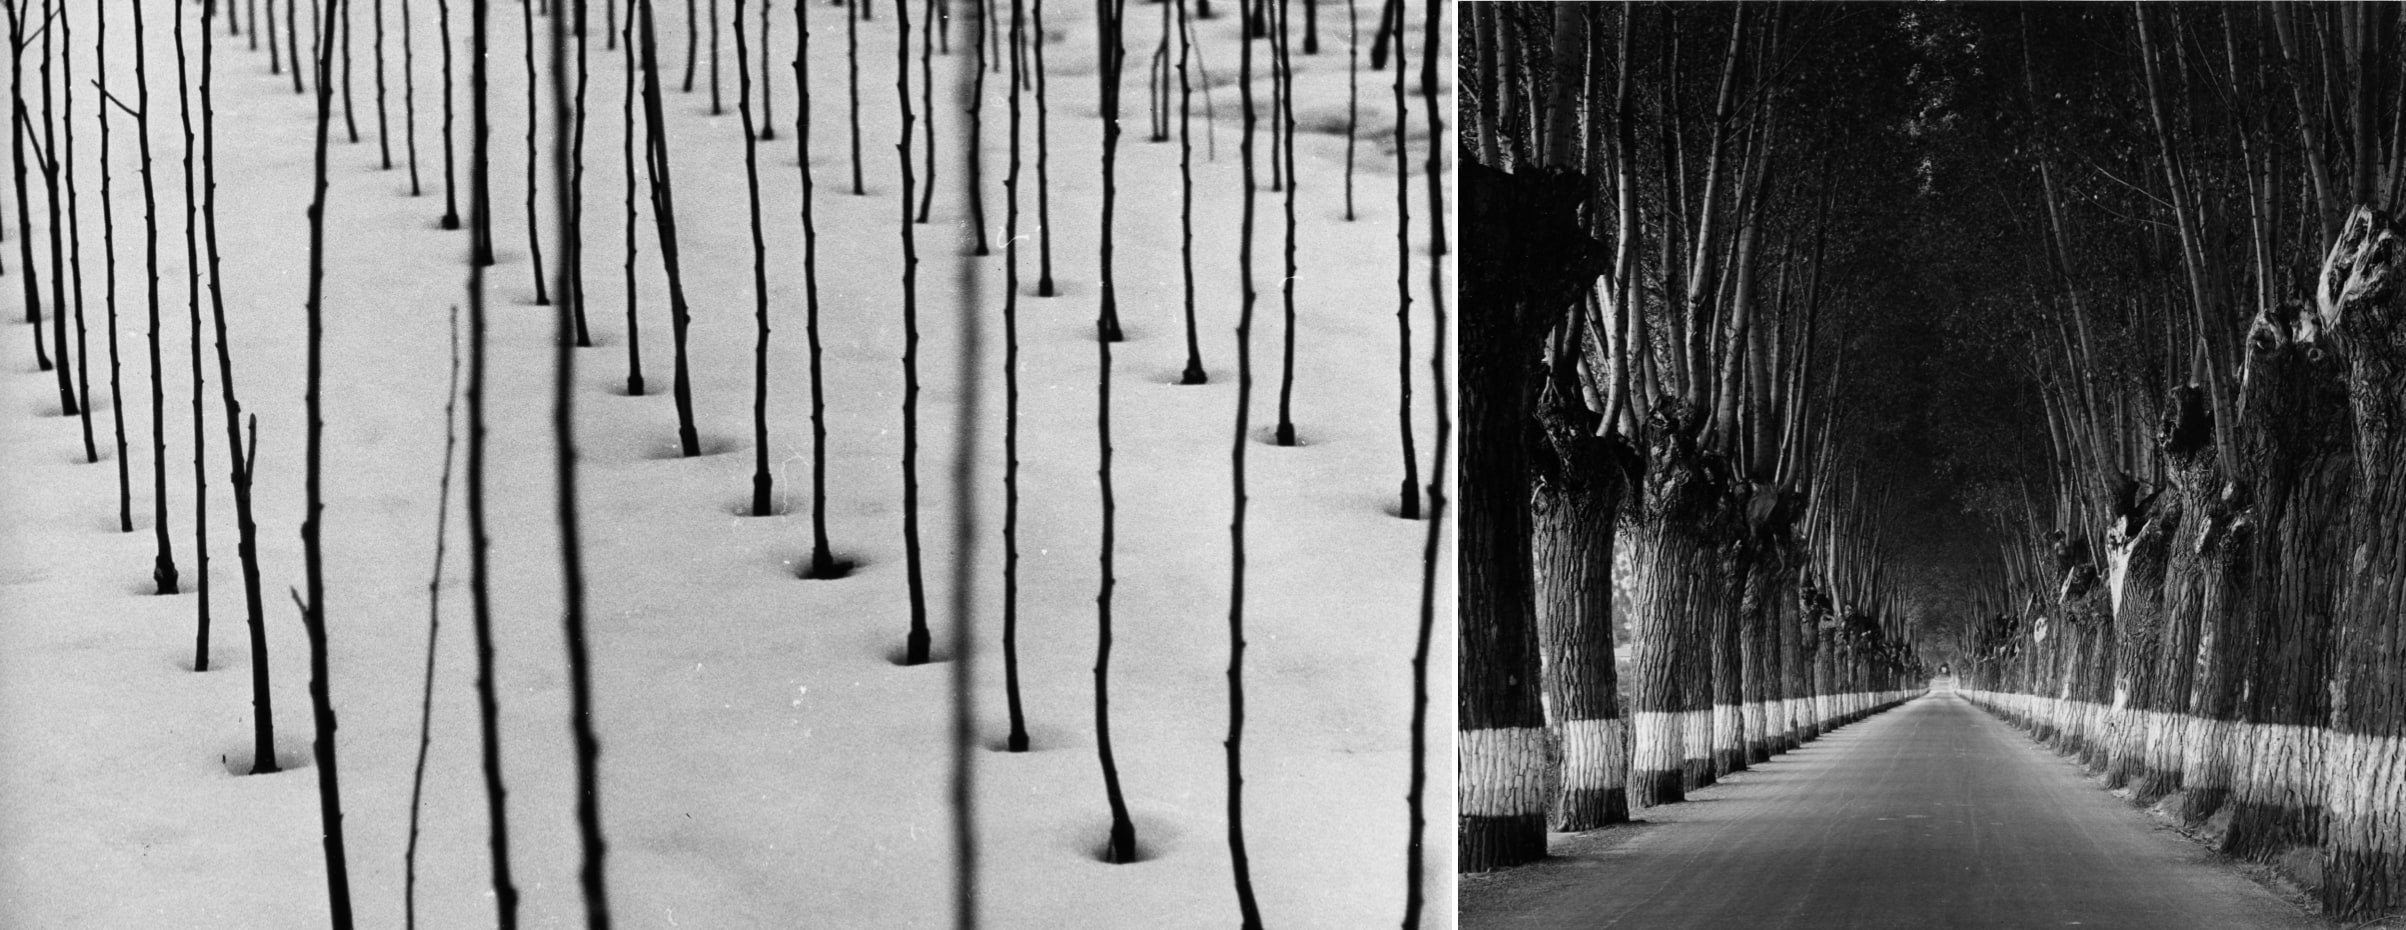 Links: Weidenstecklinge im Schnee (vor 1959?). Foto: Otl Aicher. © Florian Aicher Rotis, HfG-Archiv / Museum Ulm. HfG-Ar Ai F 1502 (01). Rechts: Allee mit Baumspiegel (vor 1959?). Foto: Otl Aicher. © Florian Aicher Rotis, HfG-Archiv / Museum Ulm. HfG-Ar Ai F 1469 (02).